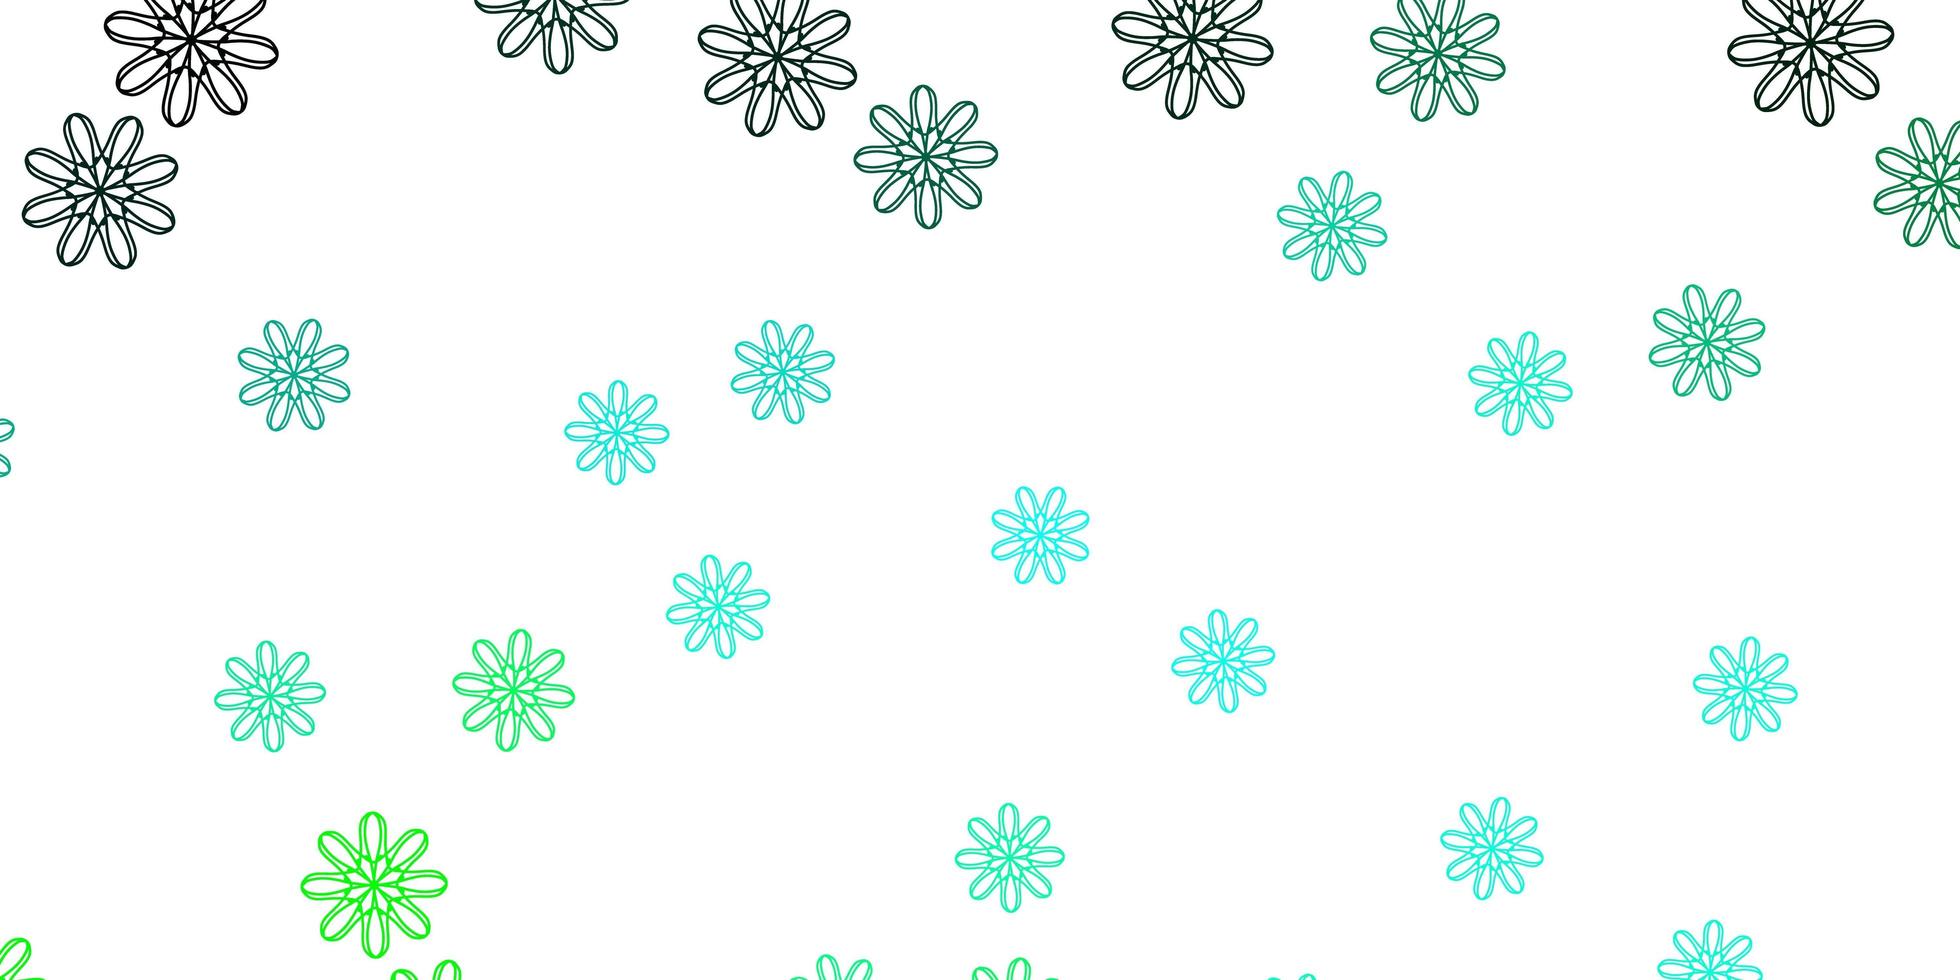 struttura di doodle di vettore verde chiaro con fiori.